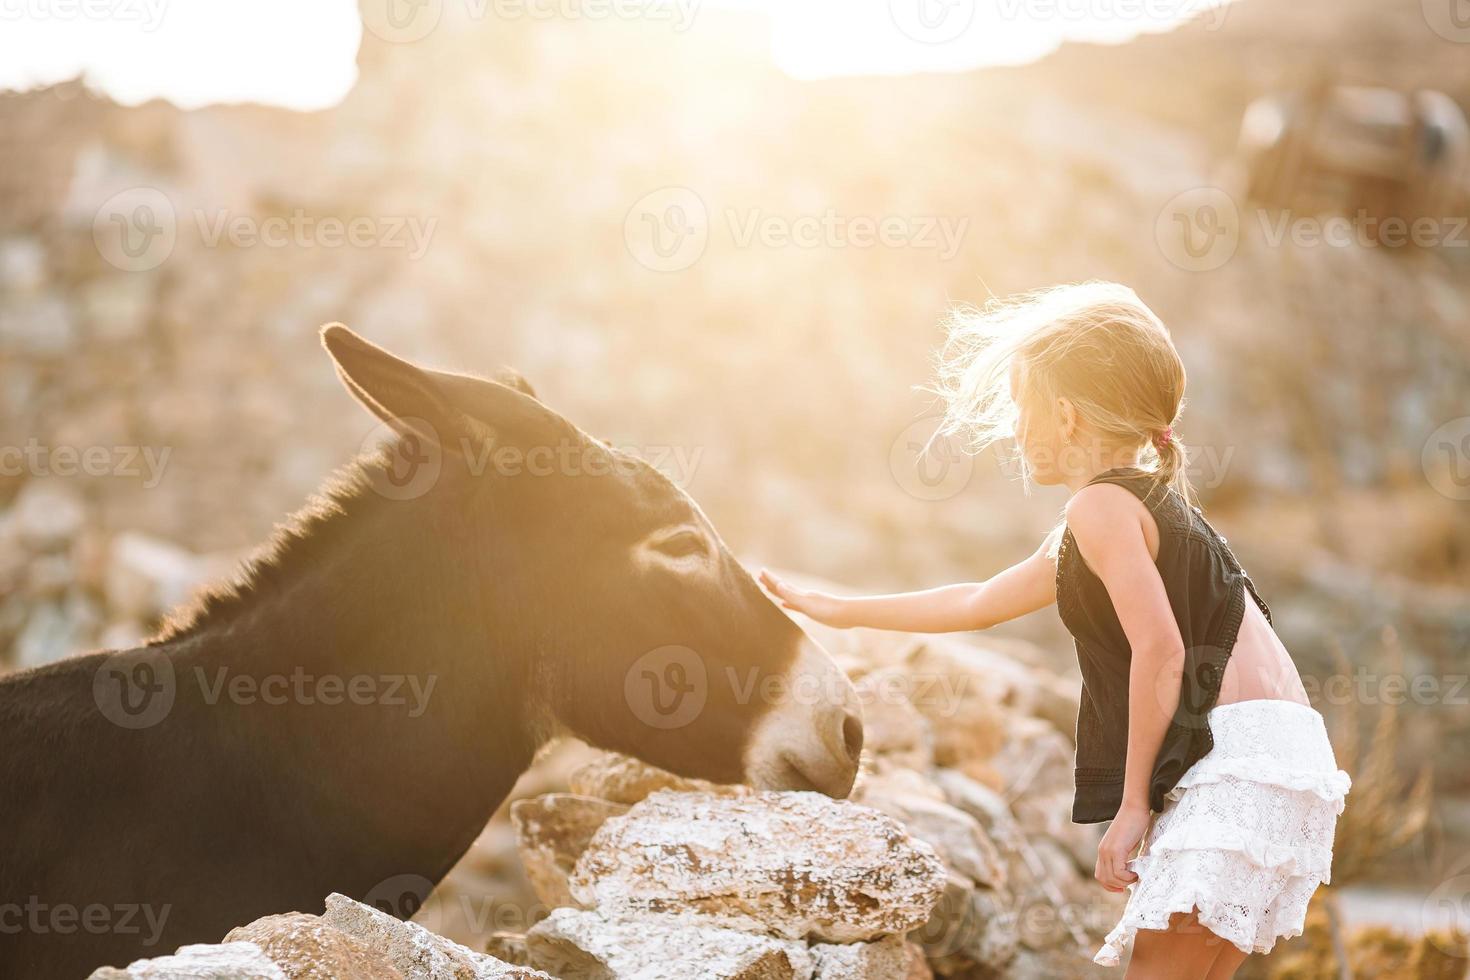 petite fille avec un âne sur l'île de mykonos photo